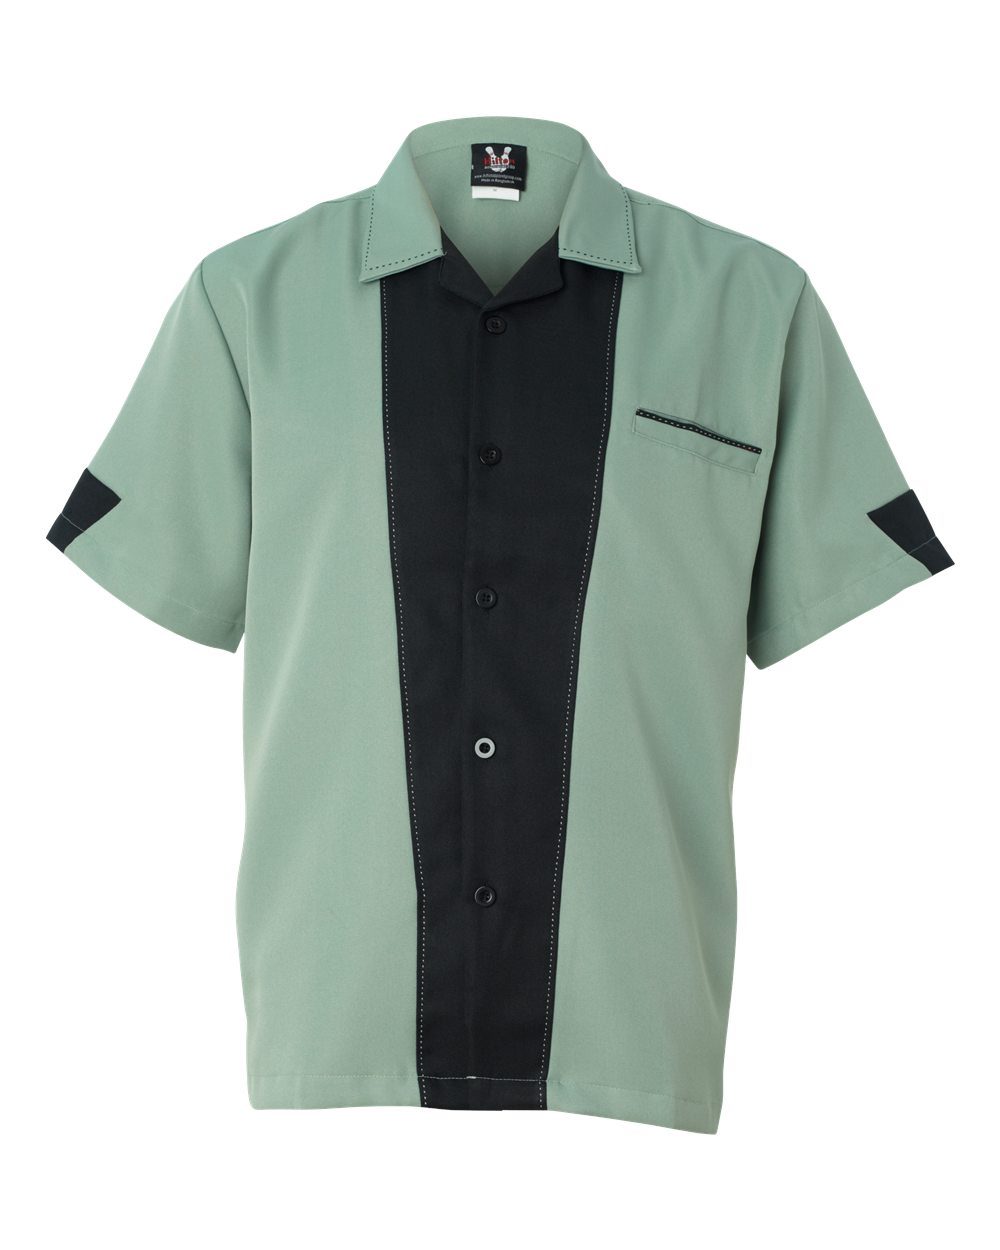 Hilton HP2245 - Monterey Bowling Shirt